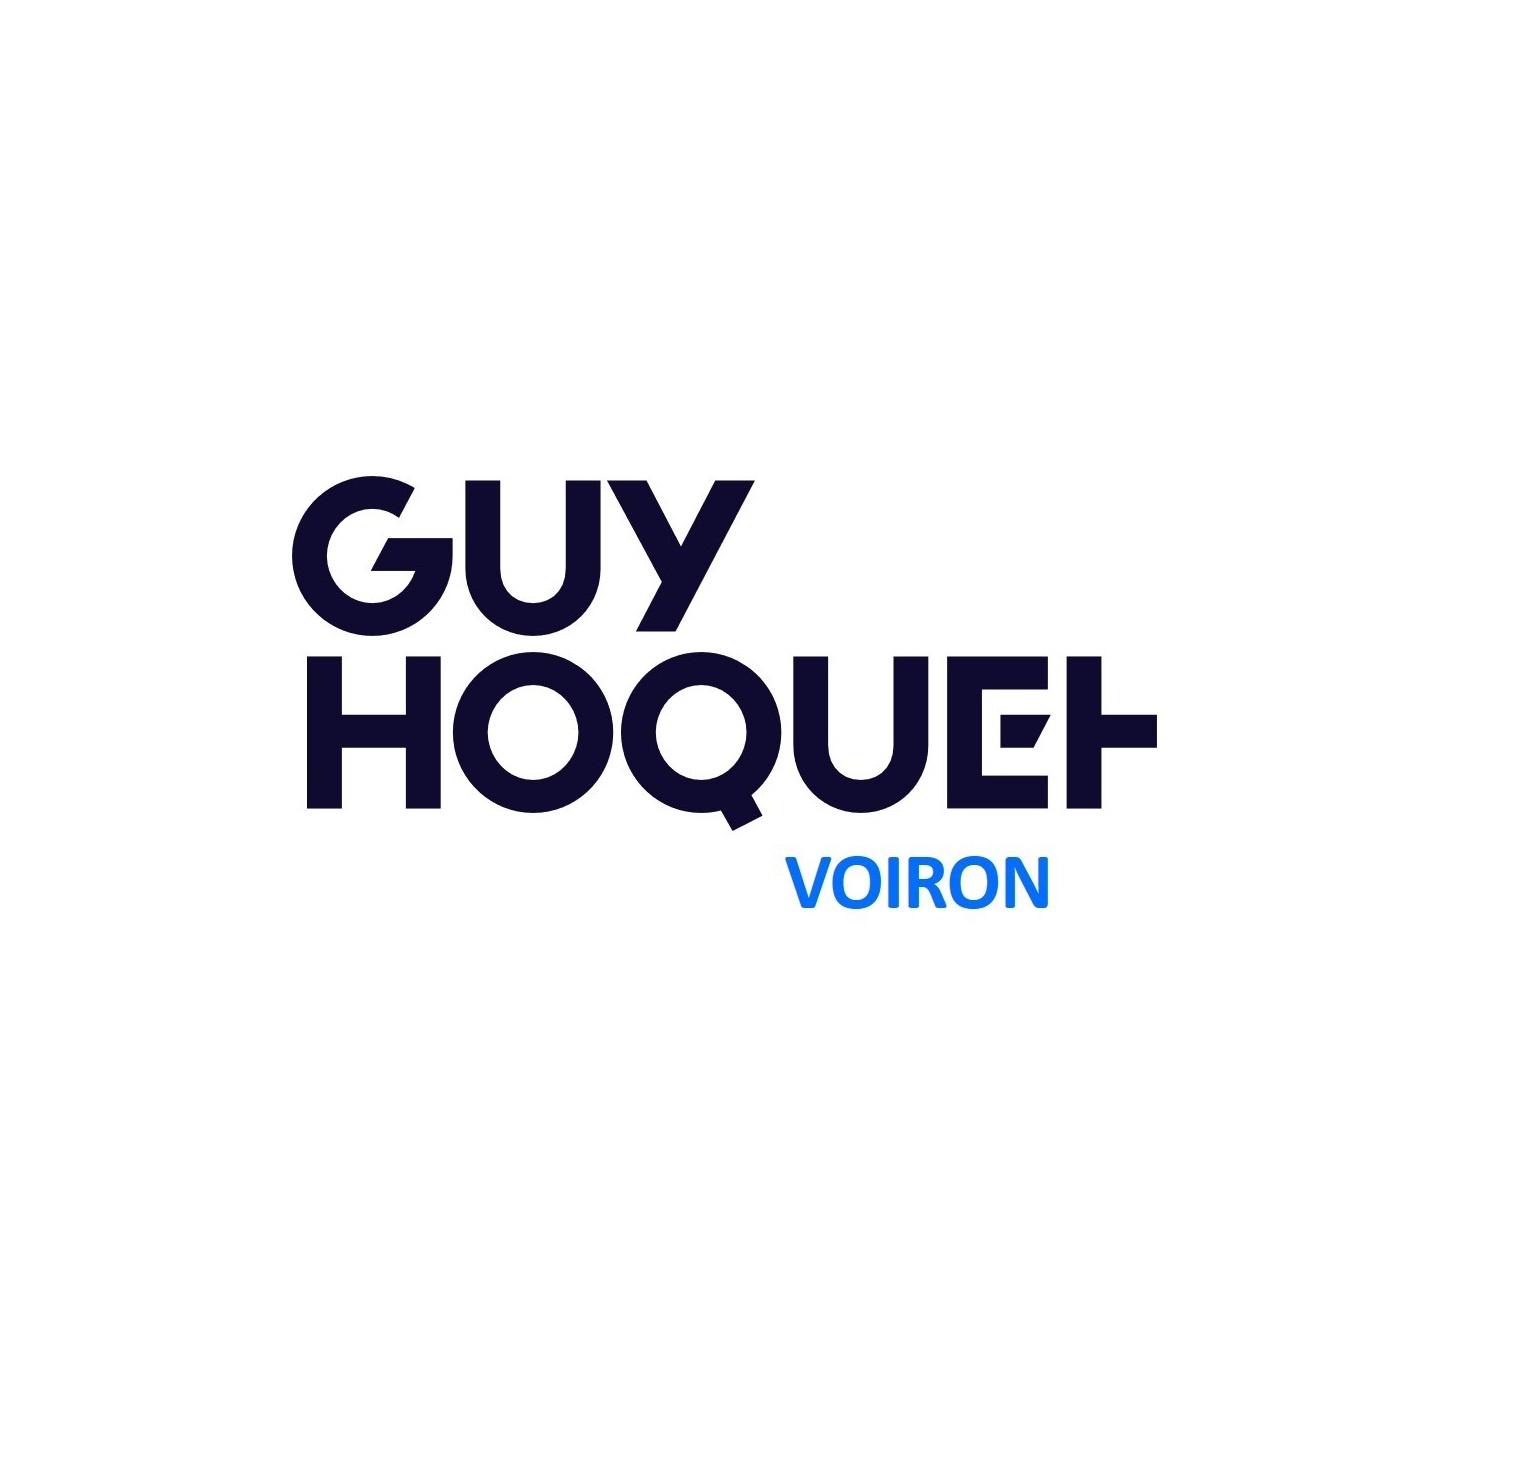 Guy Hoquet Voiron